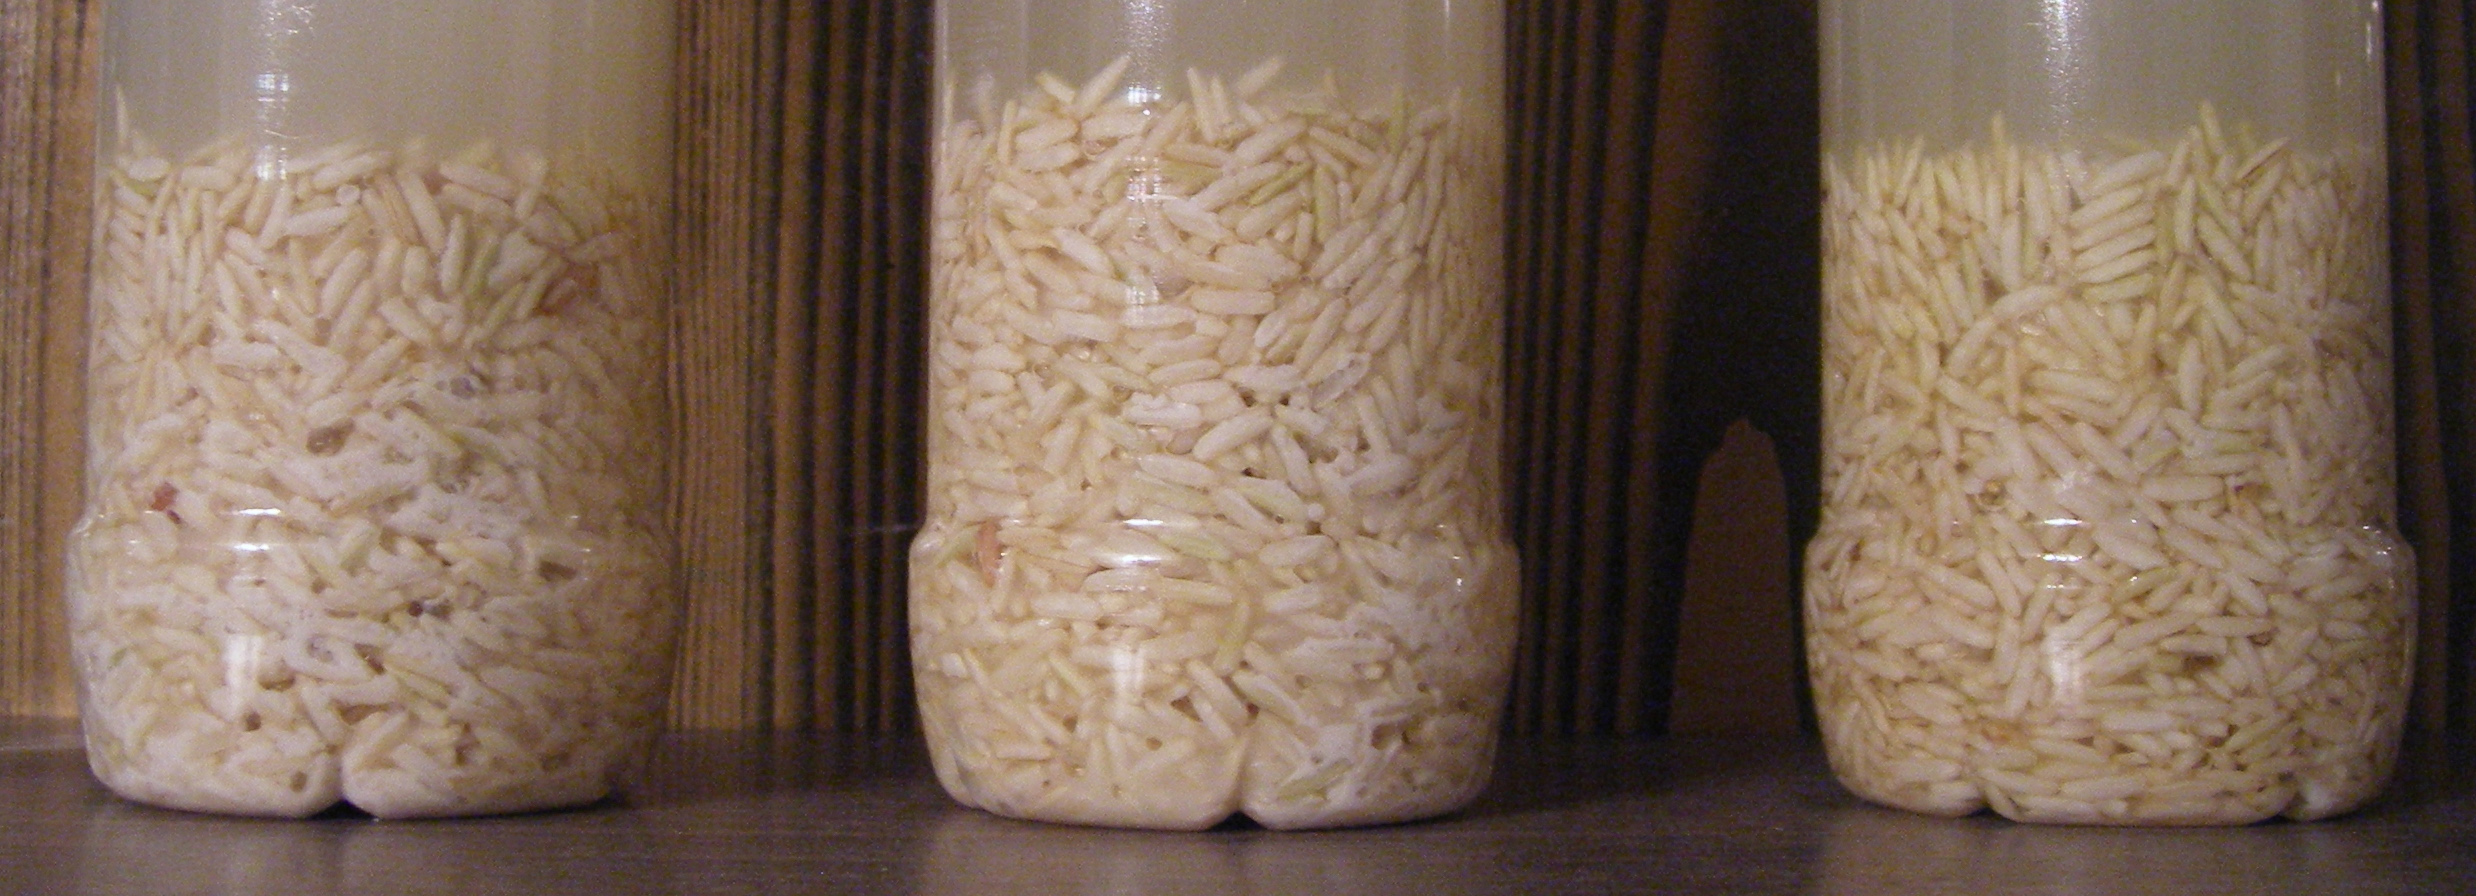 Čištění rýží